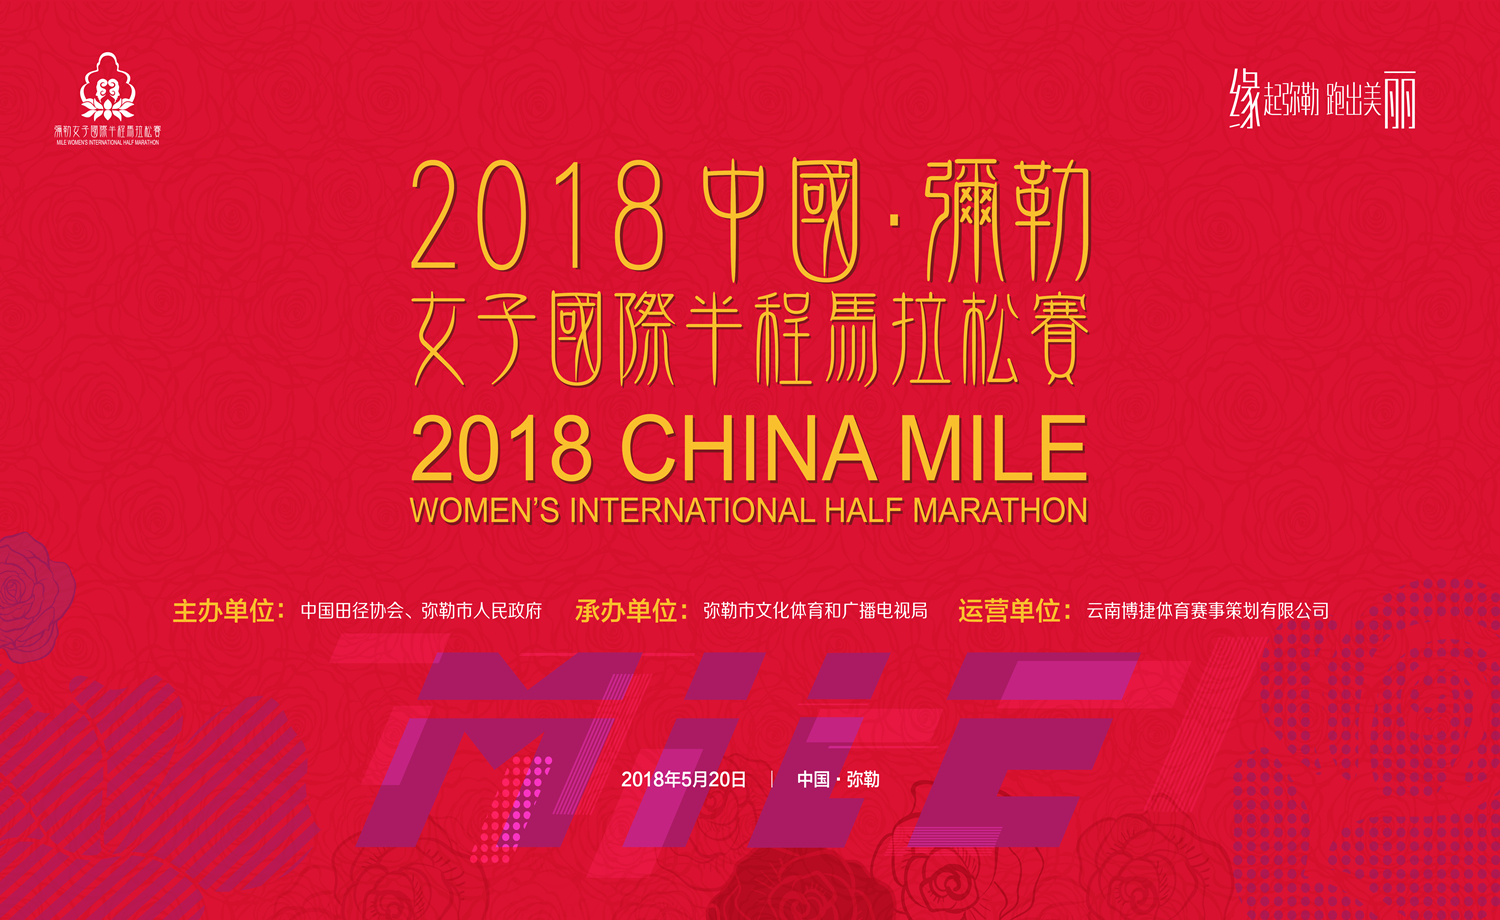 2018中国弥勒·女子国际半程马拉松赛